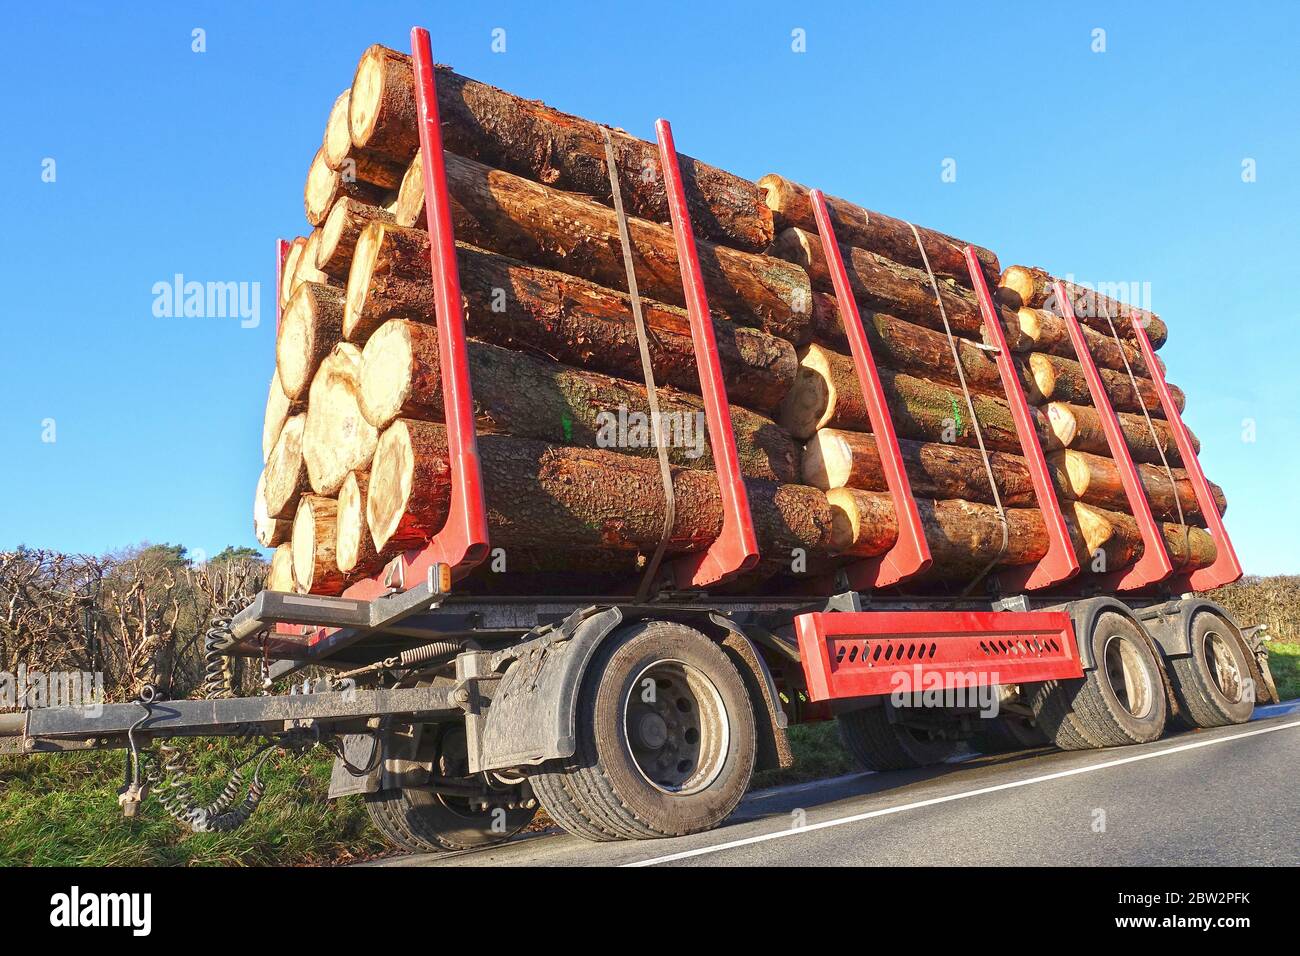 Holztransport LKW Anhänger mit Stapeln von frisch geschnittenem Holz  Stockfotografie - Alamy